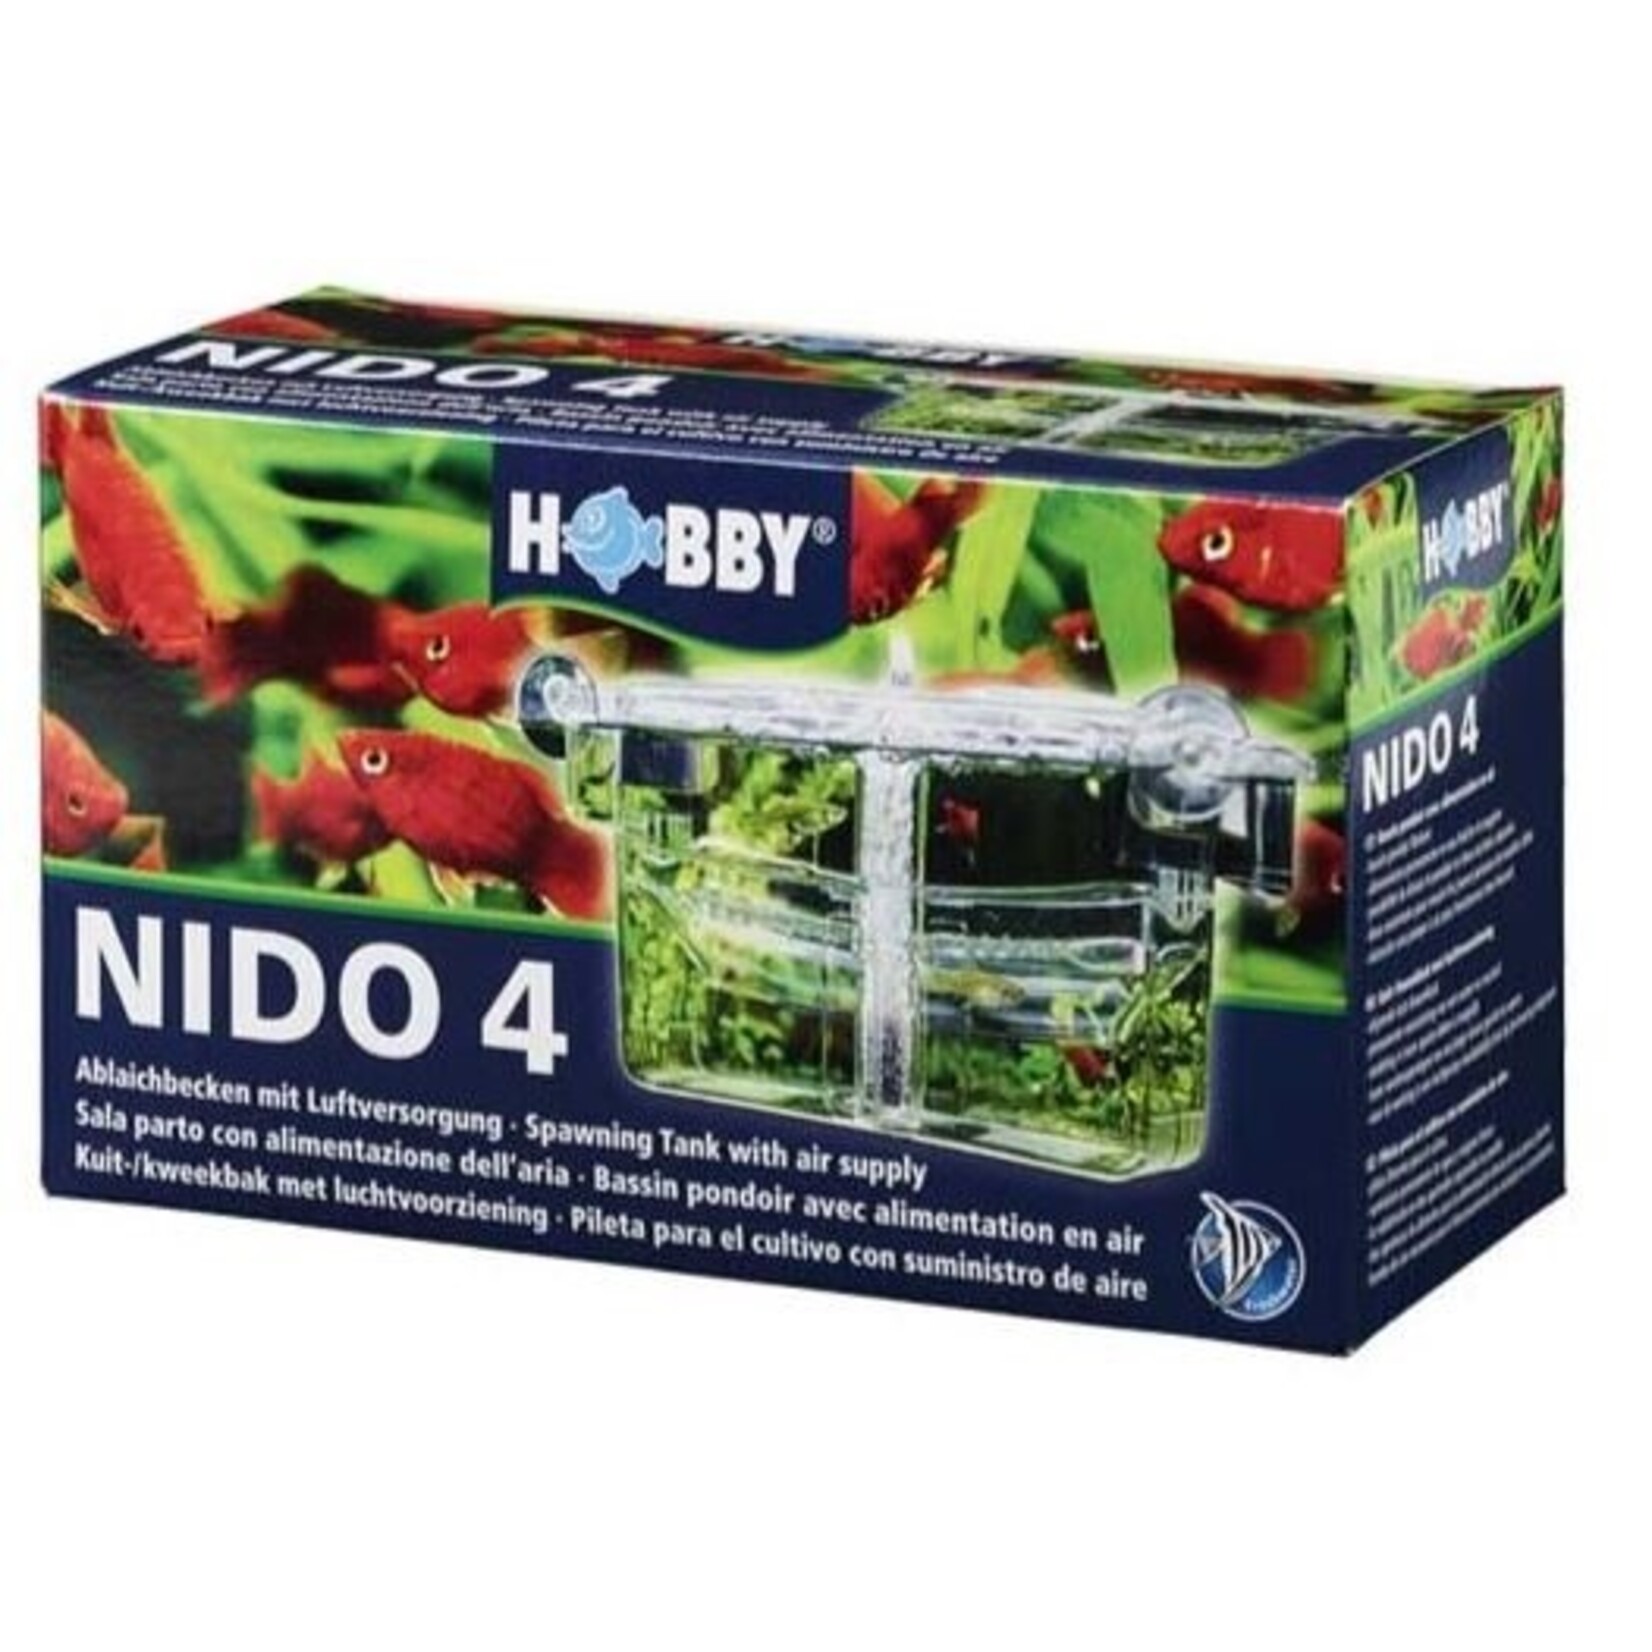 Hobby Nido 4 storage tray 23x10x11.5 cm